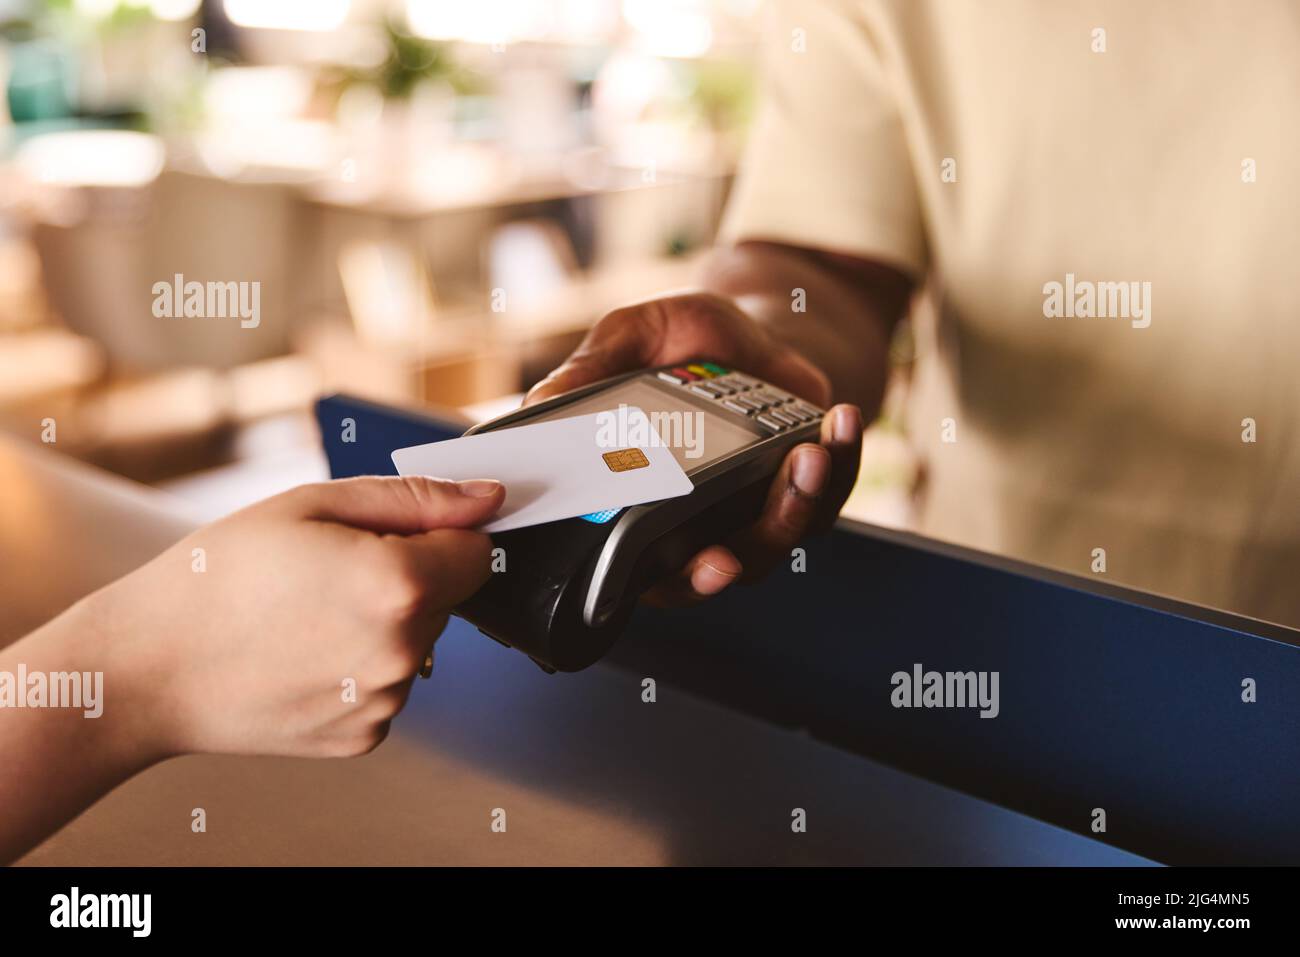 Schließen Sie den Verkaufsassistenten im Einzelhandelsgeschäft mit Kundenzahlung über kontaktlose Zahlung per Kreditkarte NFC ab Stockfoto